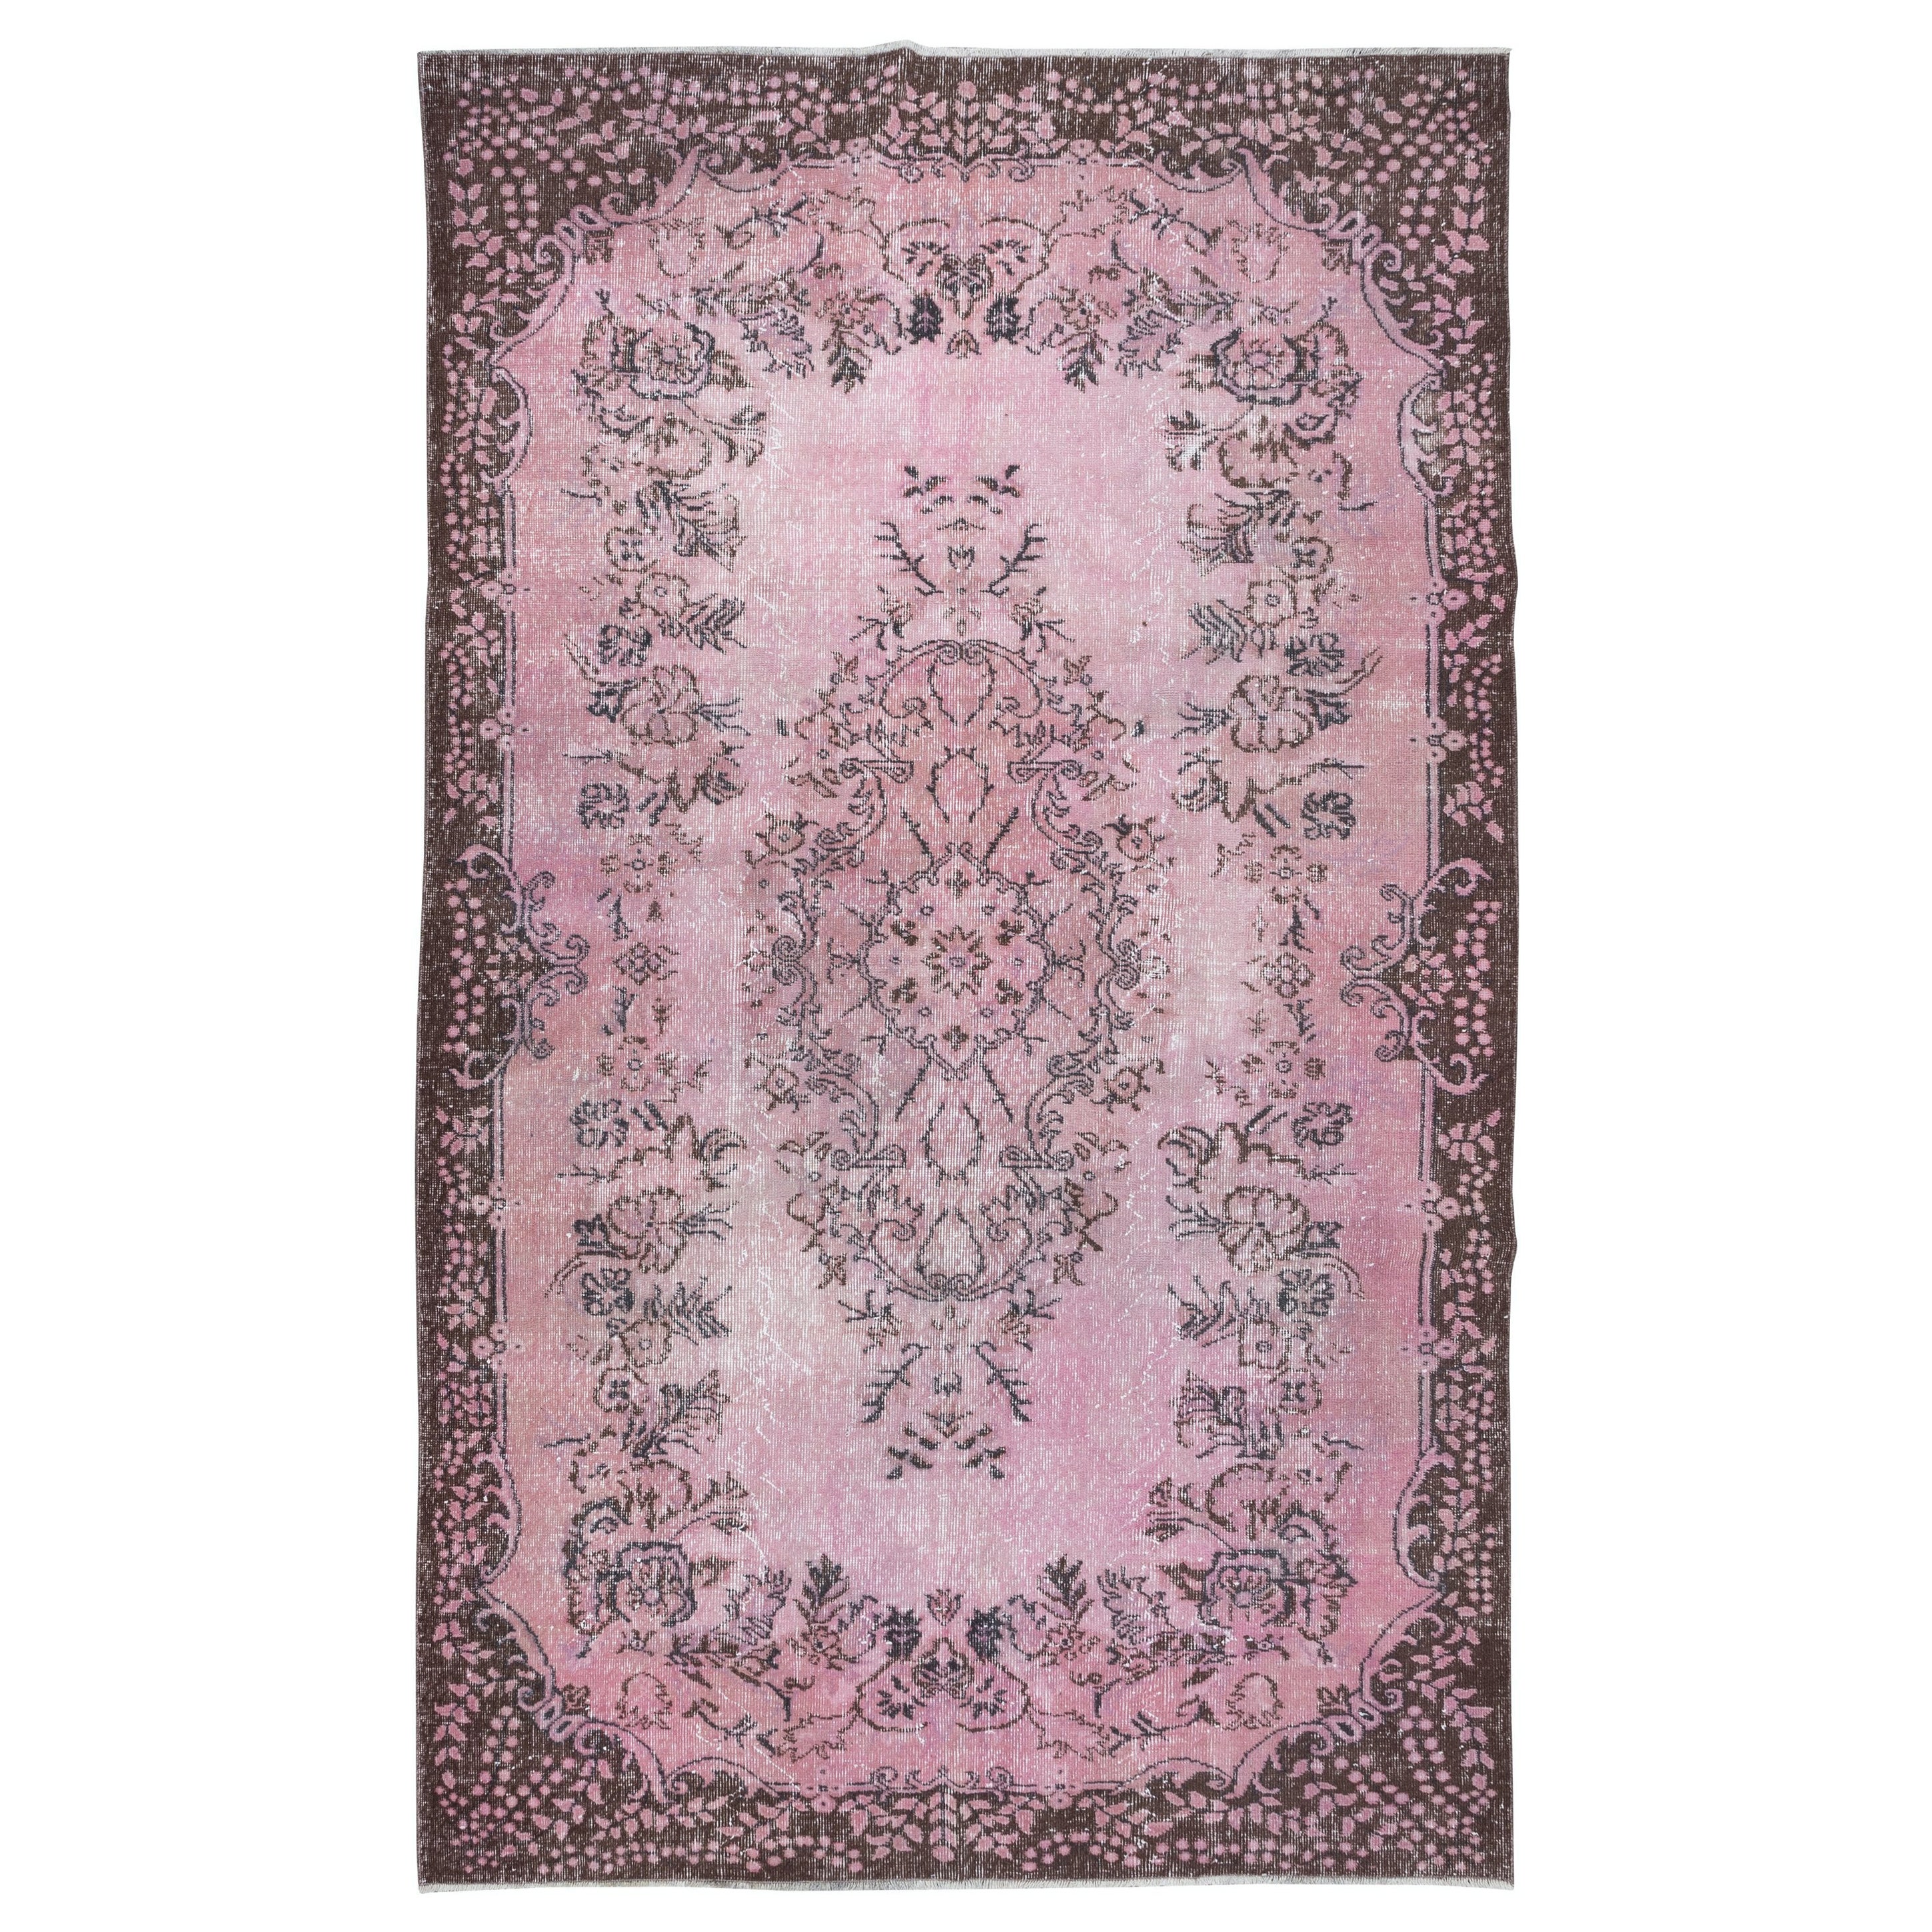 6x10 Ft Handmade Turkish Area Rug in Light Pink, Living Room Carpet, Kitchen Rug For Sale